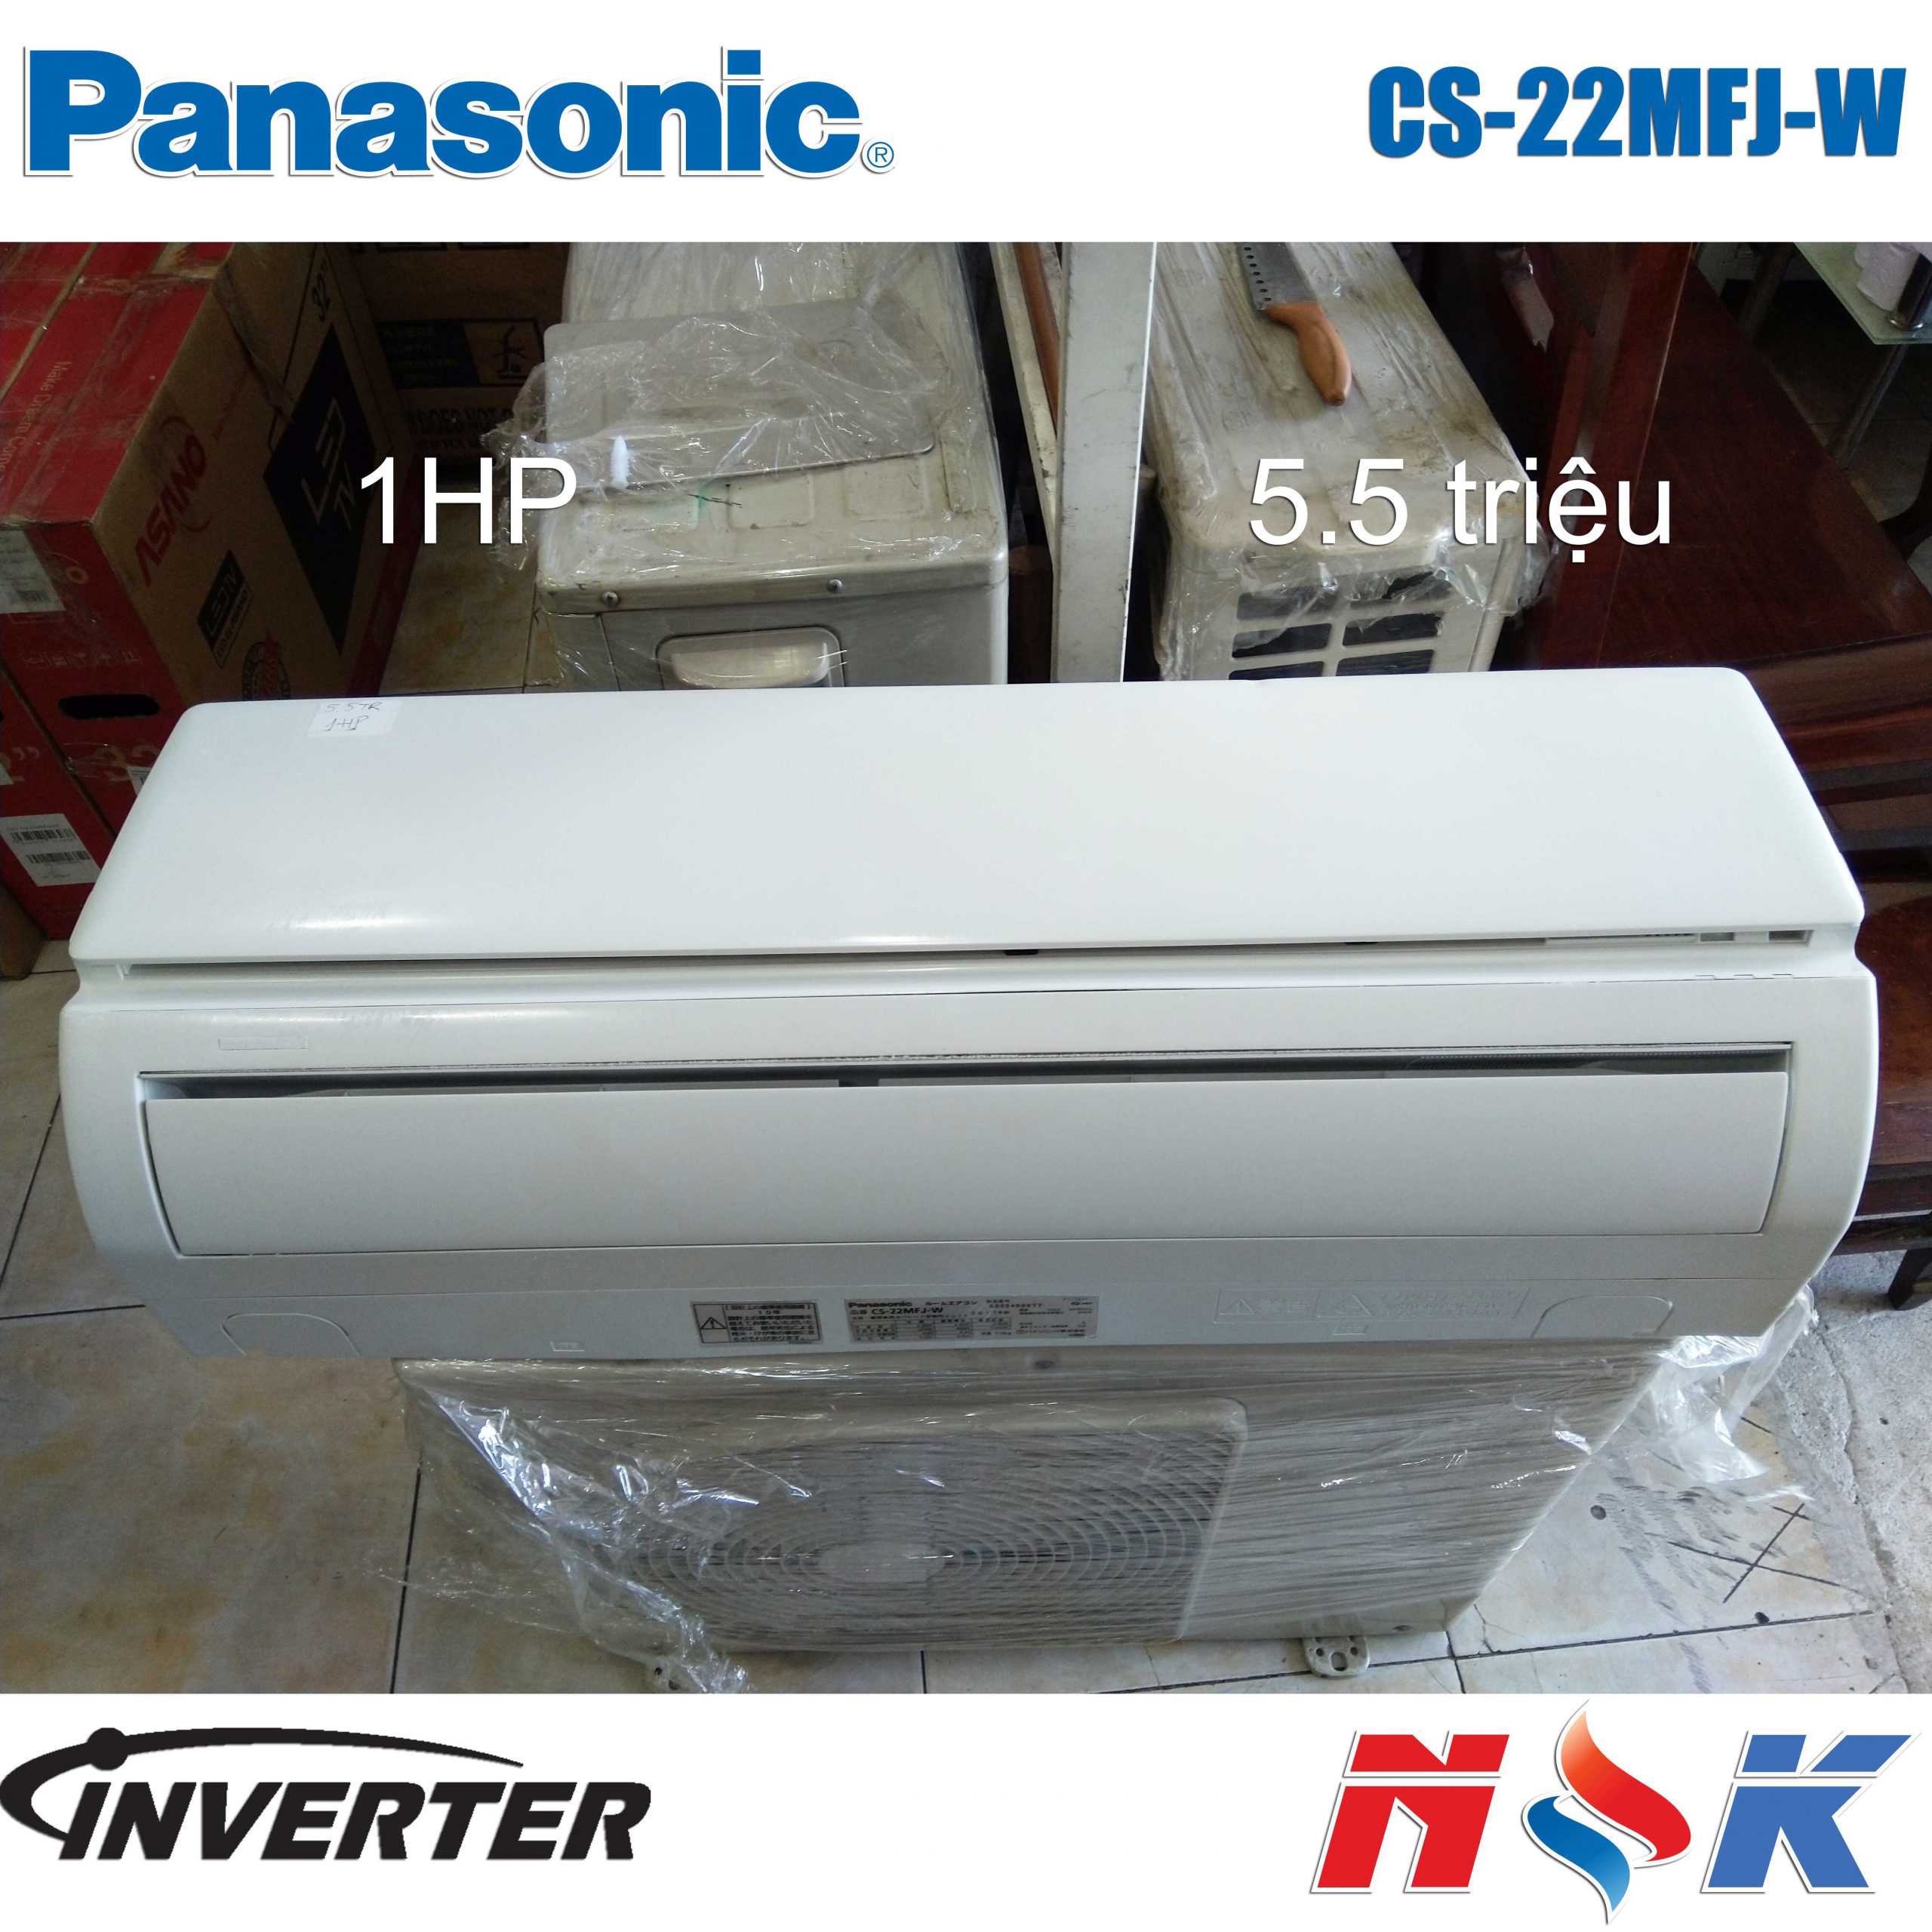 Máy lạnh Panasonic Inverter CS-22MFJ-W 1HP